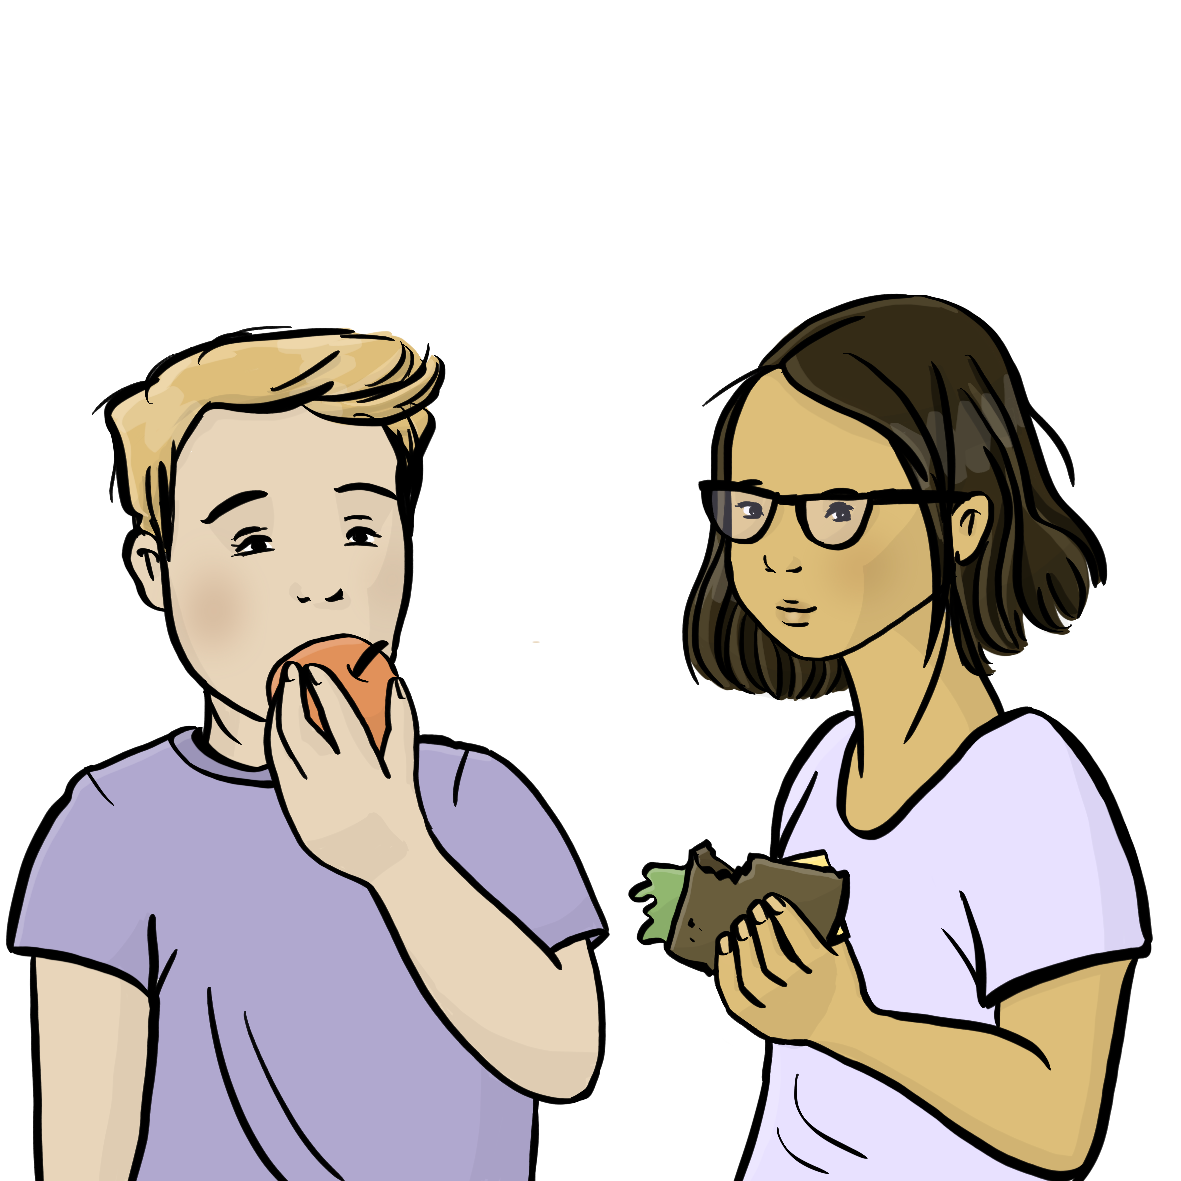 Ein Junge beißt in einen Apfel. Ein Mädchen hält ein Käsebrot in der Hand. 